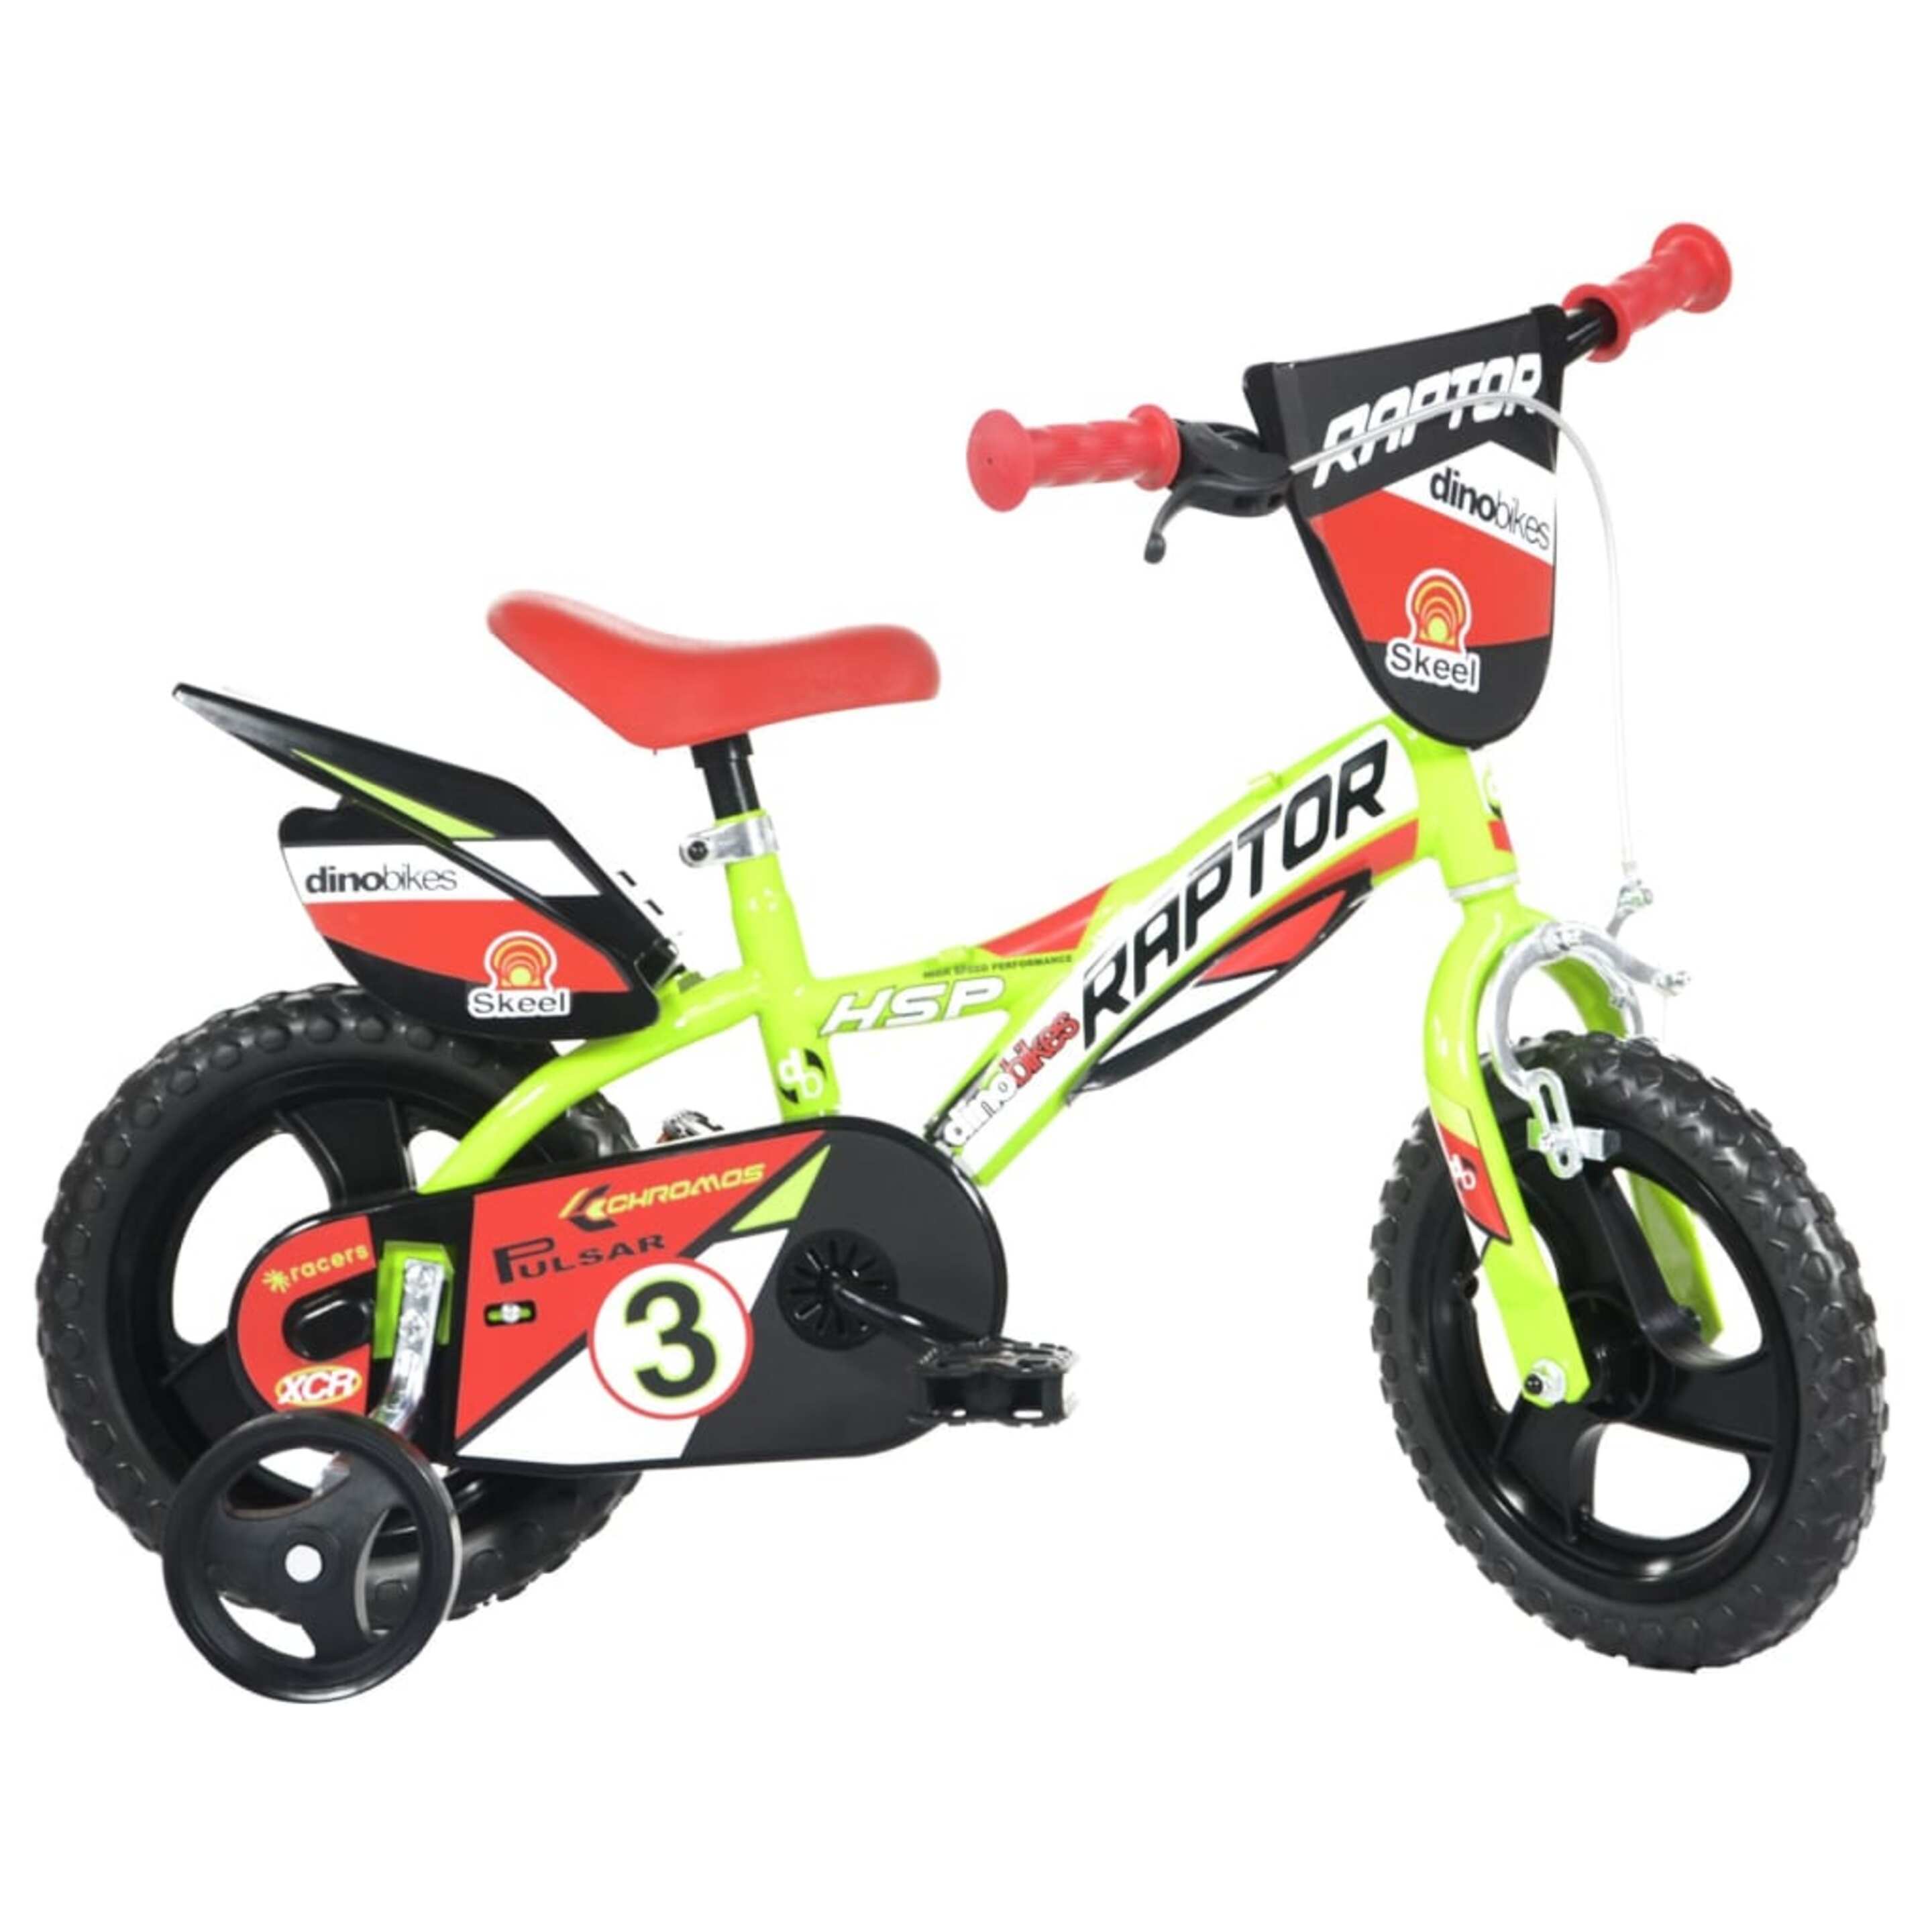 Bicicleta Criança Raptor 12 Polegadas 3-5 Anos - Amarelo | Sport Zone MKP